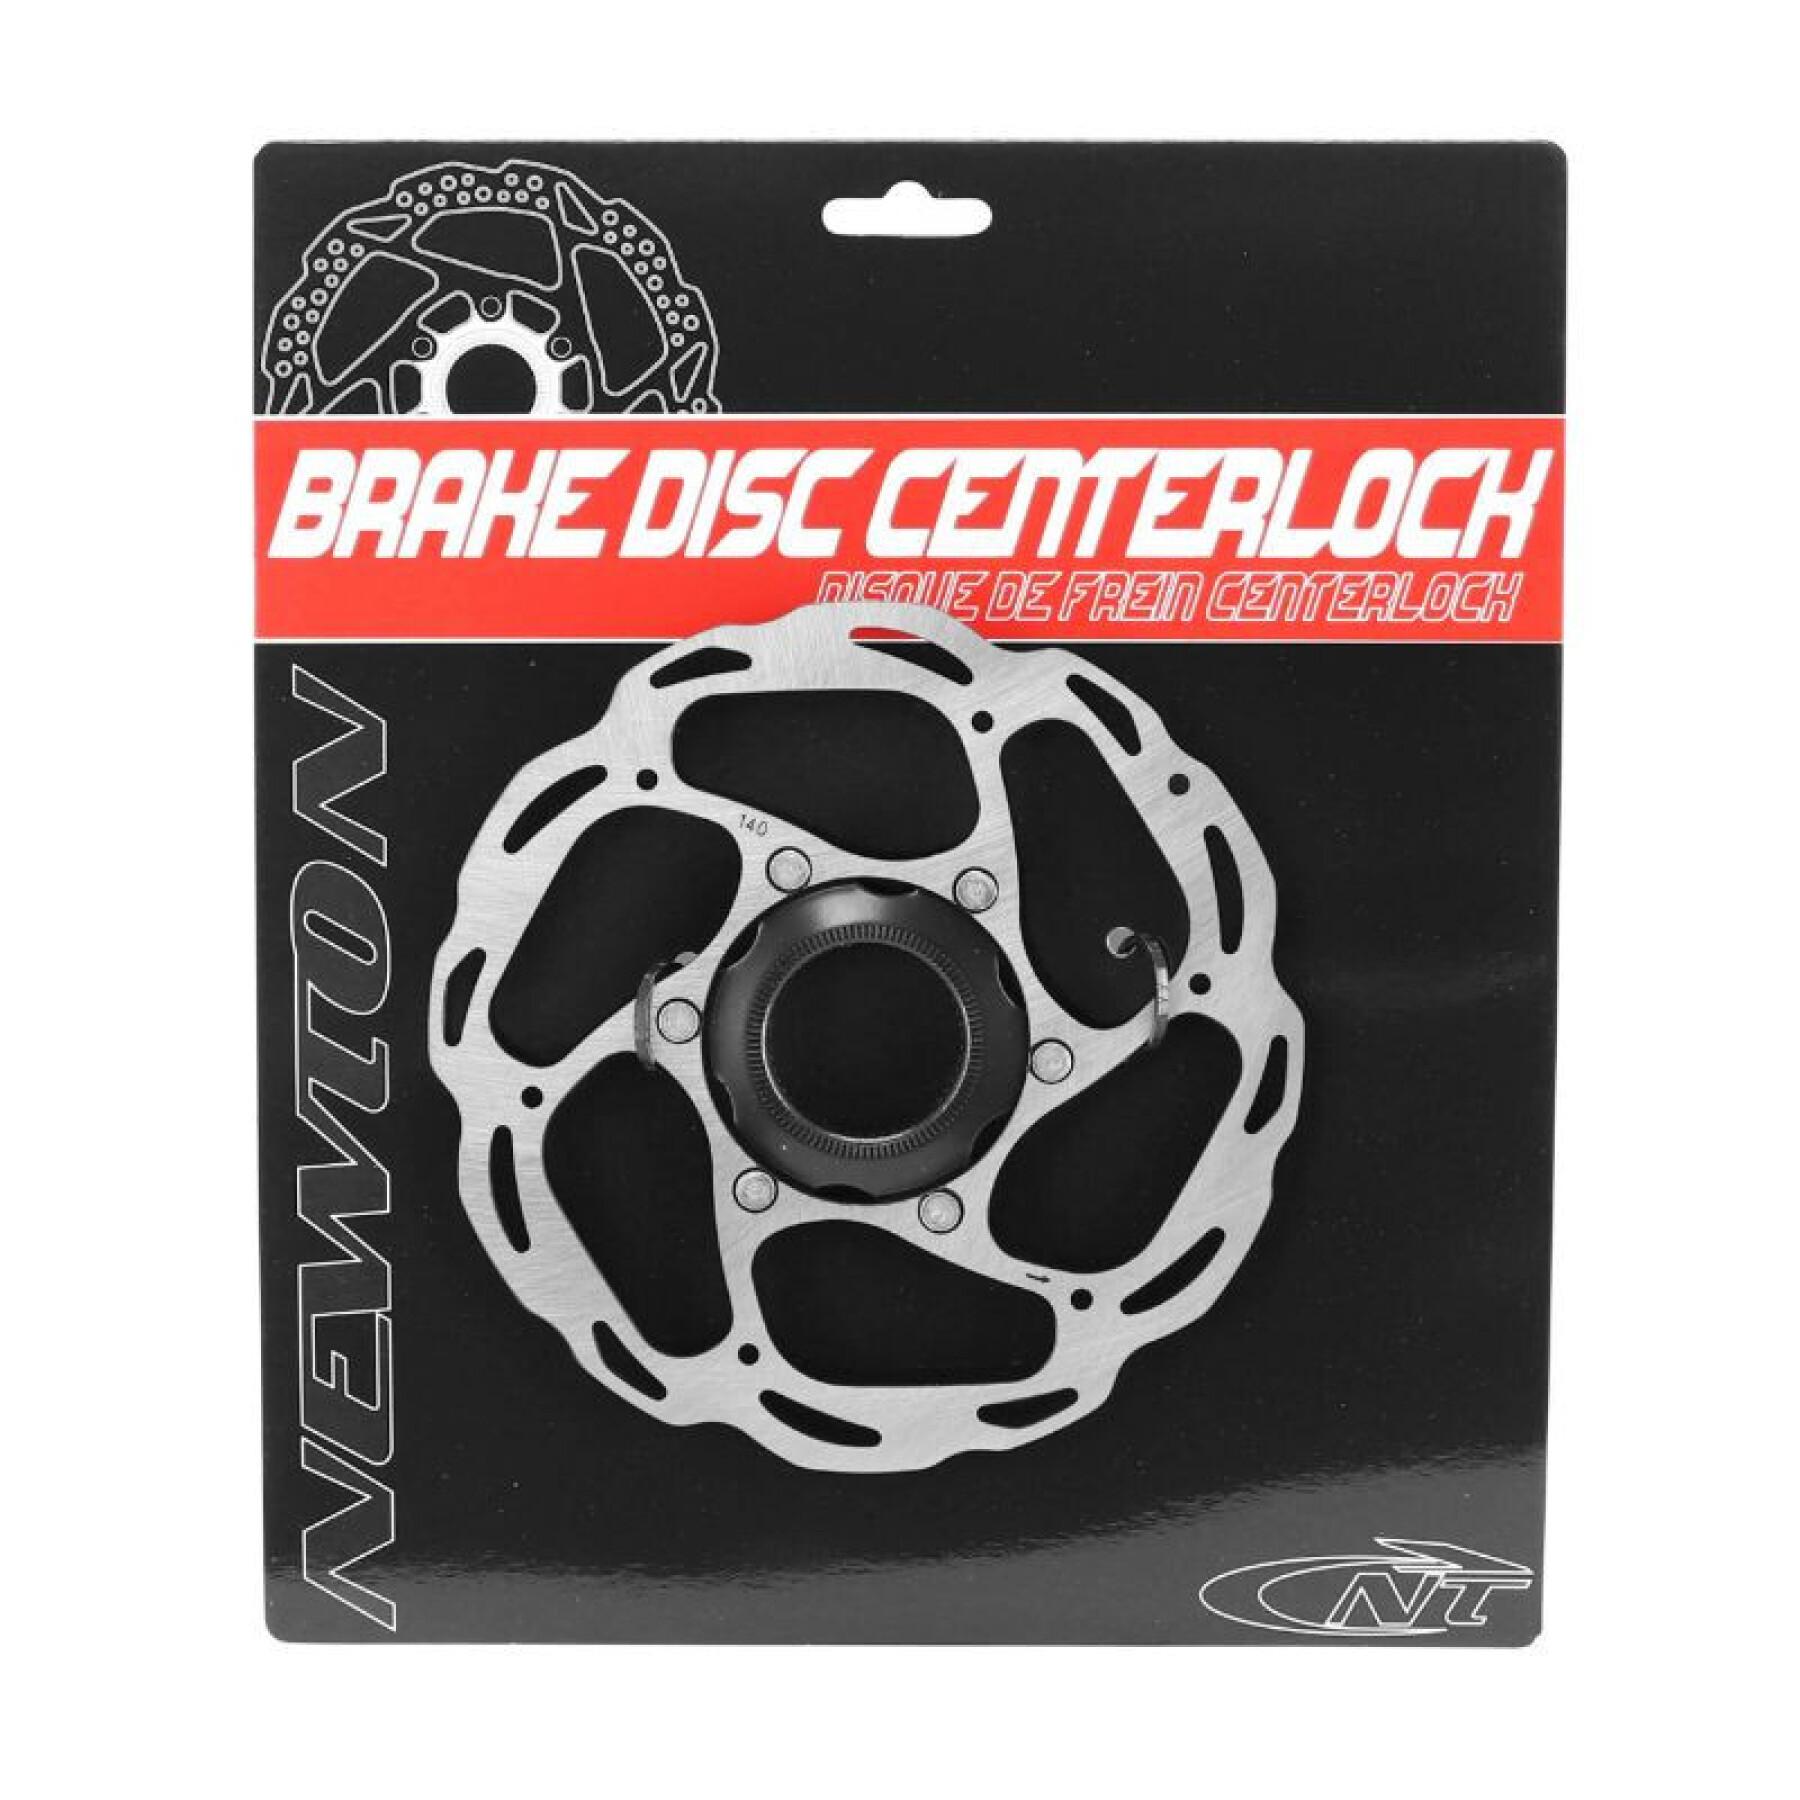 Road brake disc Shimano Centerlock